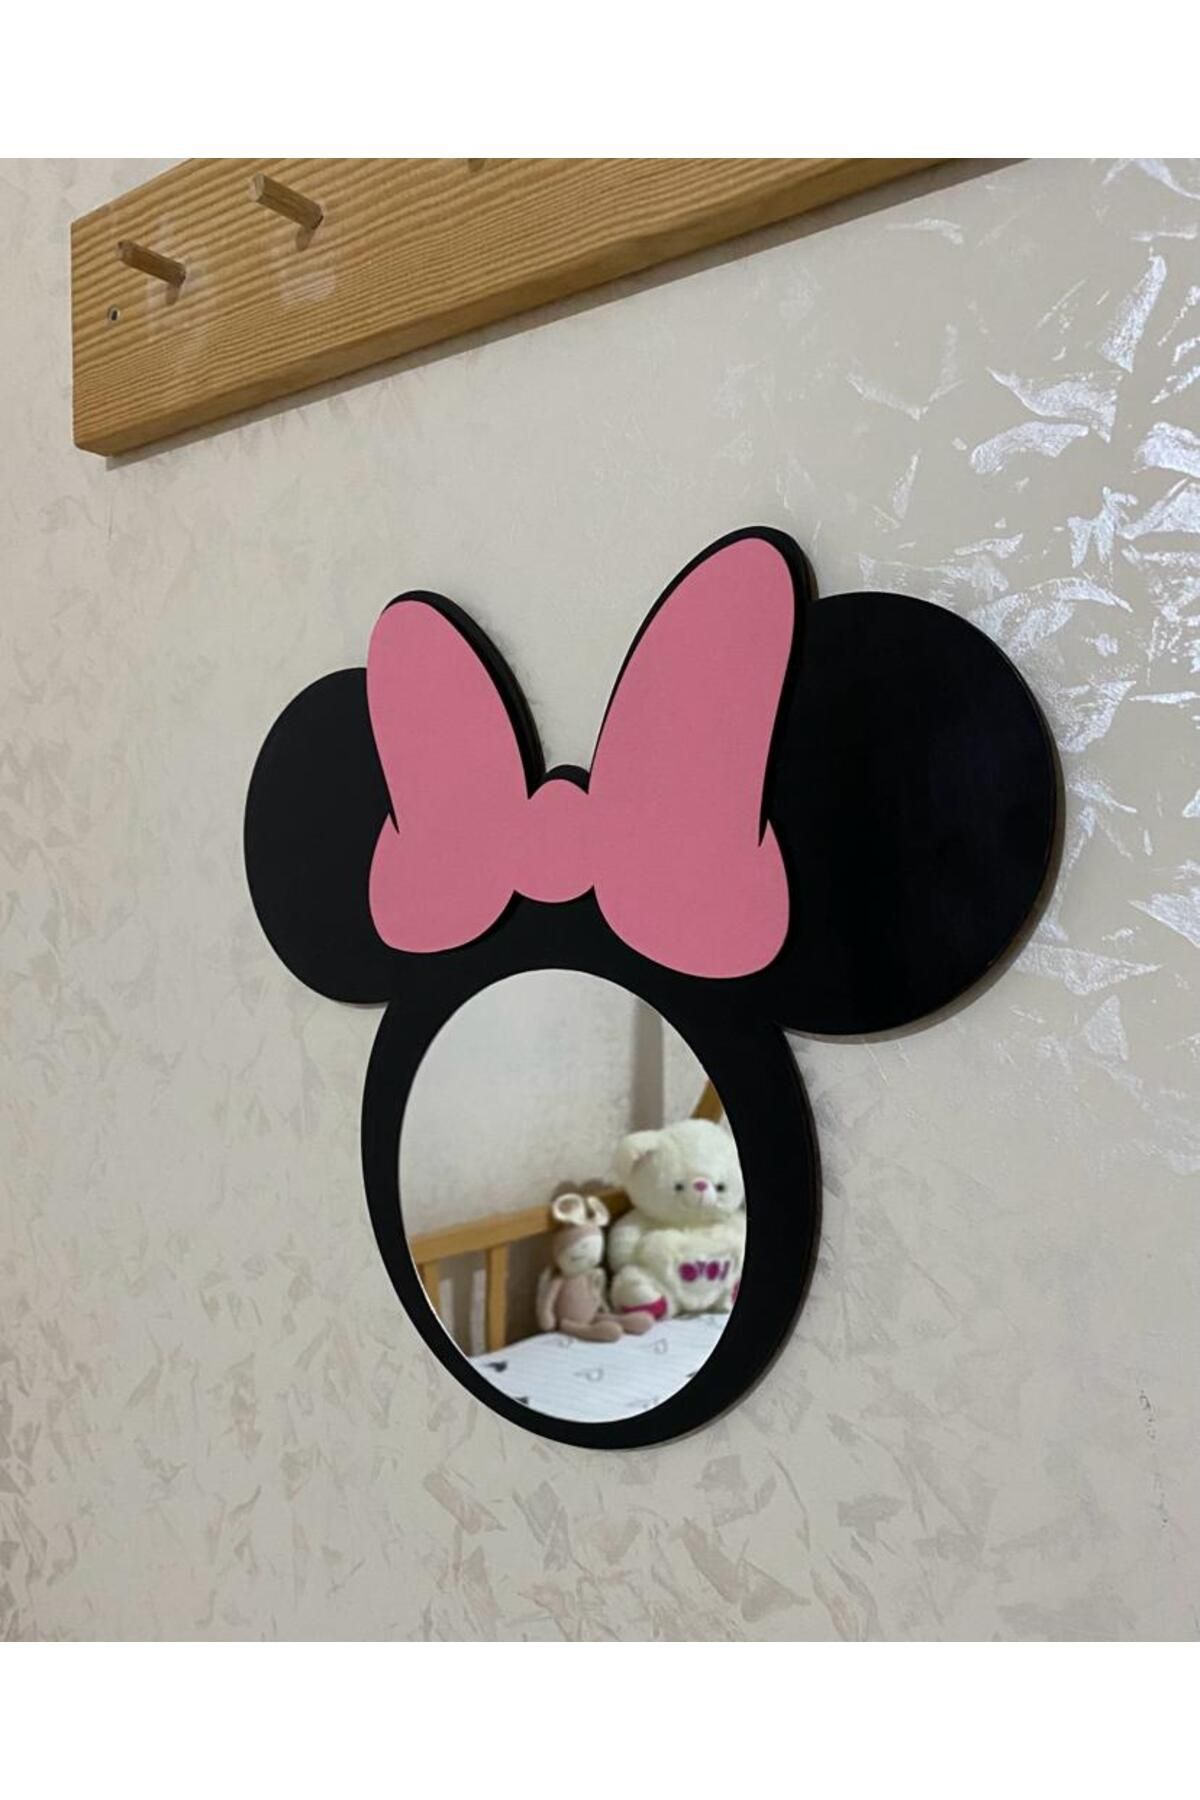 Olur o zaman Minnie Mouse Figürlü Çocuk Odası Dekoratif Ayna